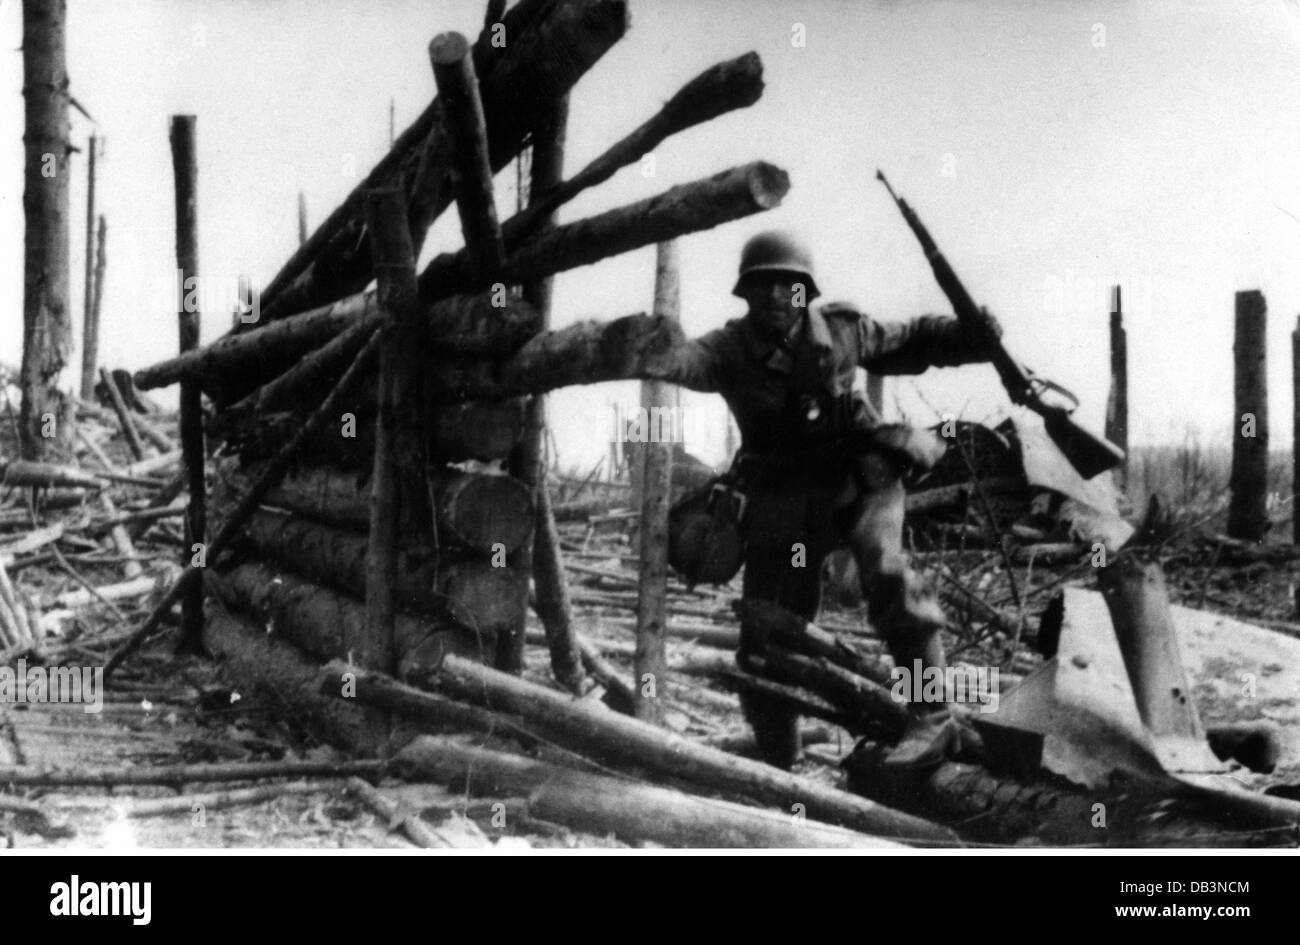 Evénements, Seconde Guerre mondiale / Seconde Guerre mondiale, Russie 1942 / 1943, soldat allemand dans une maison détruite, 1943, droits supplémentaires-Clearences-non disponible Banque D'Images